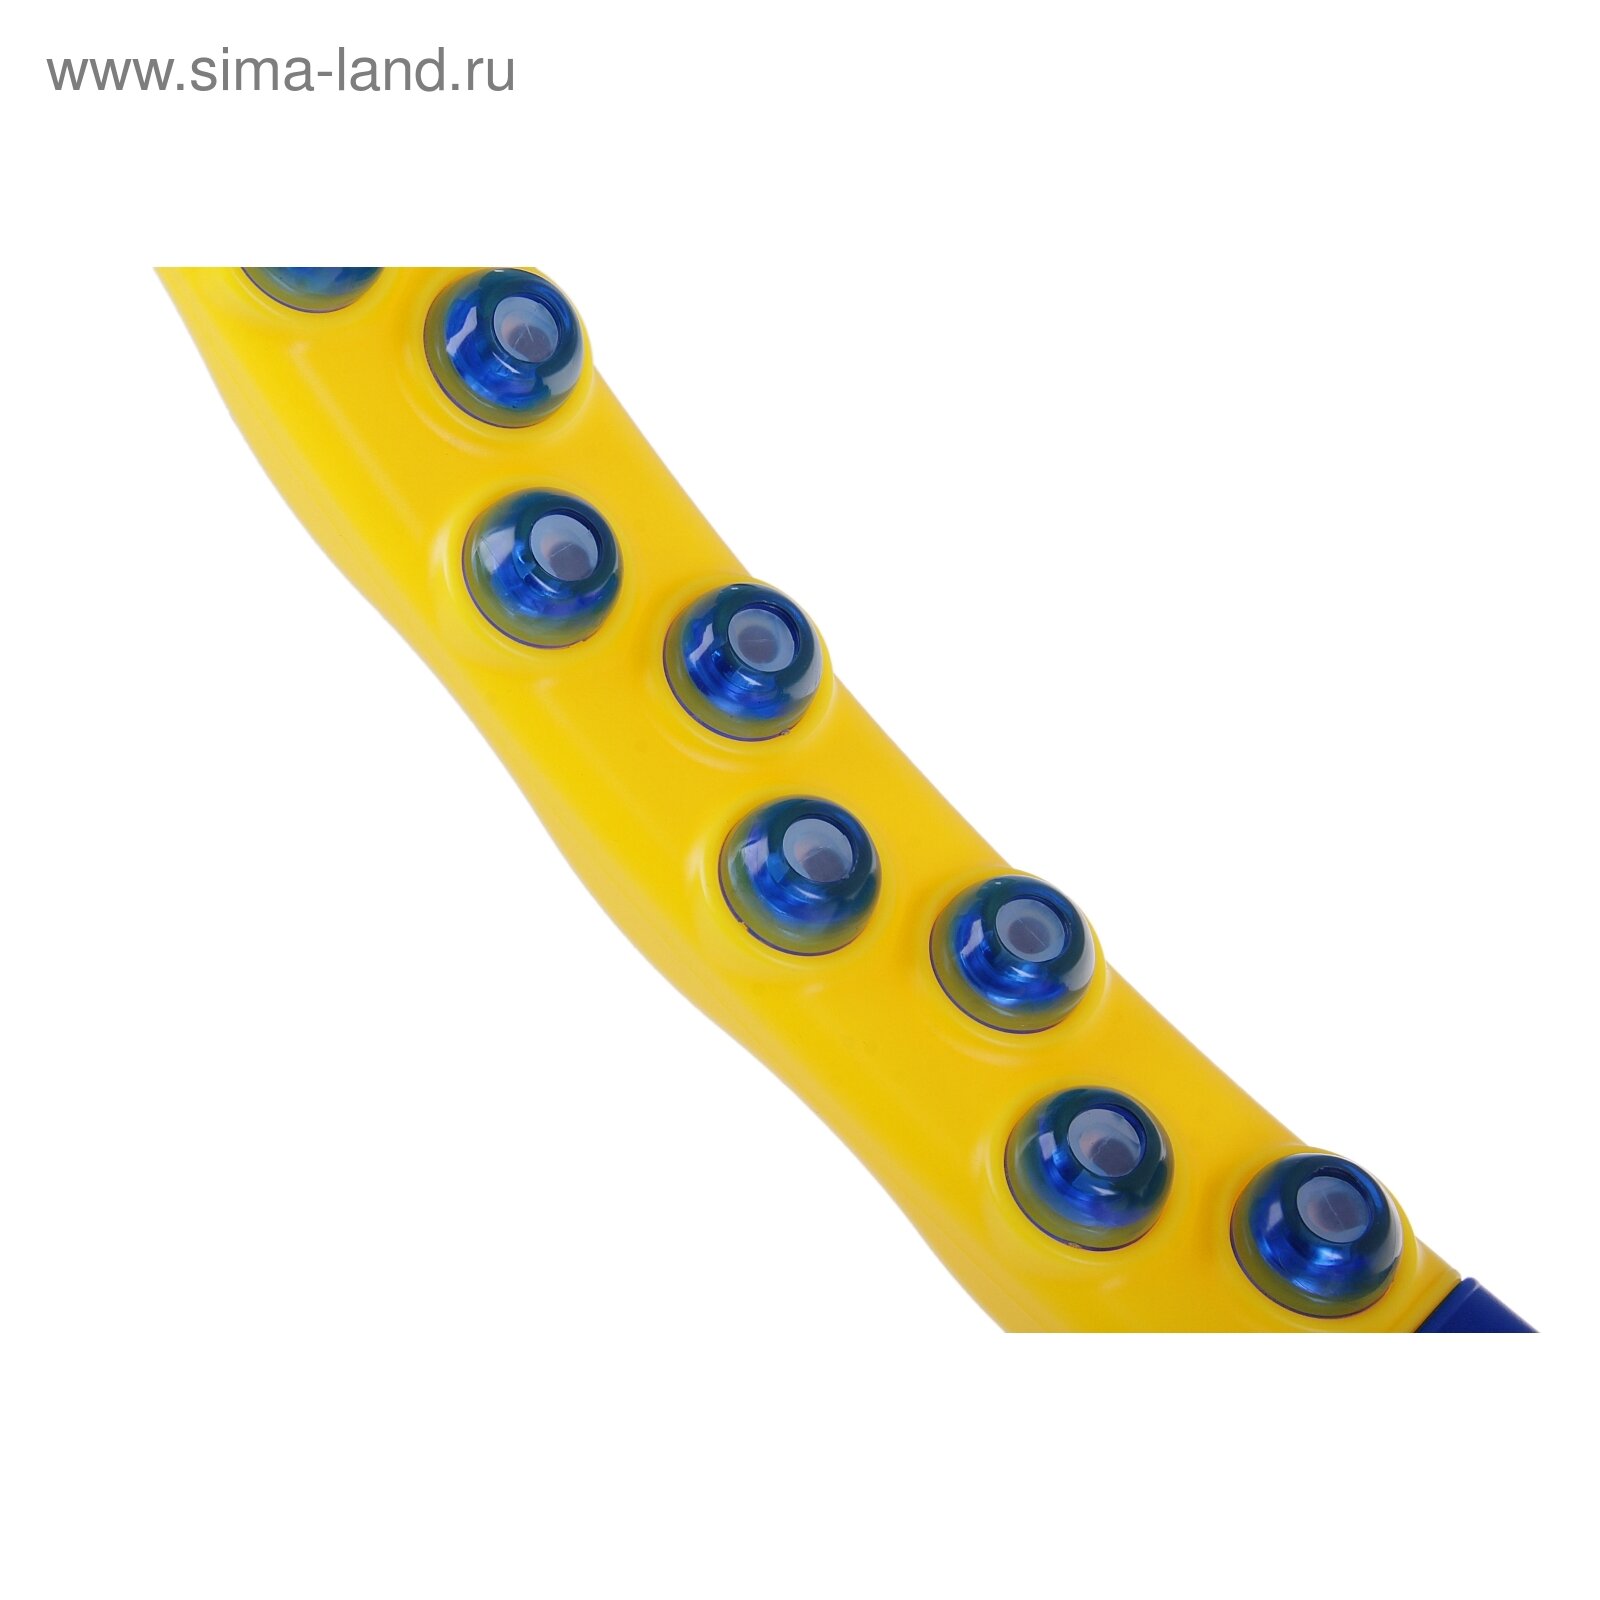 Обруч массажный, диаметр 110 см, 8 частей, вес 2,05 кг, цвет синий, желтый